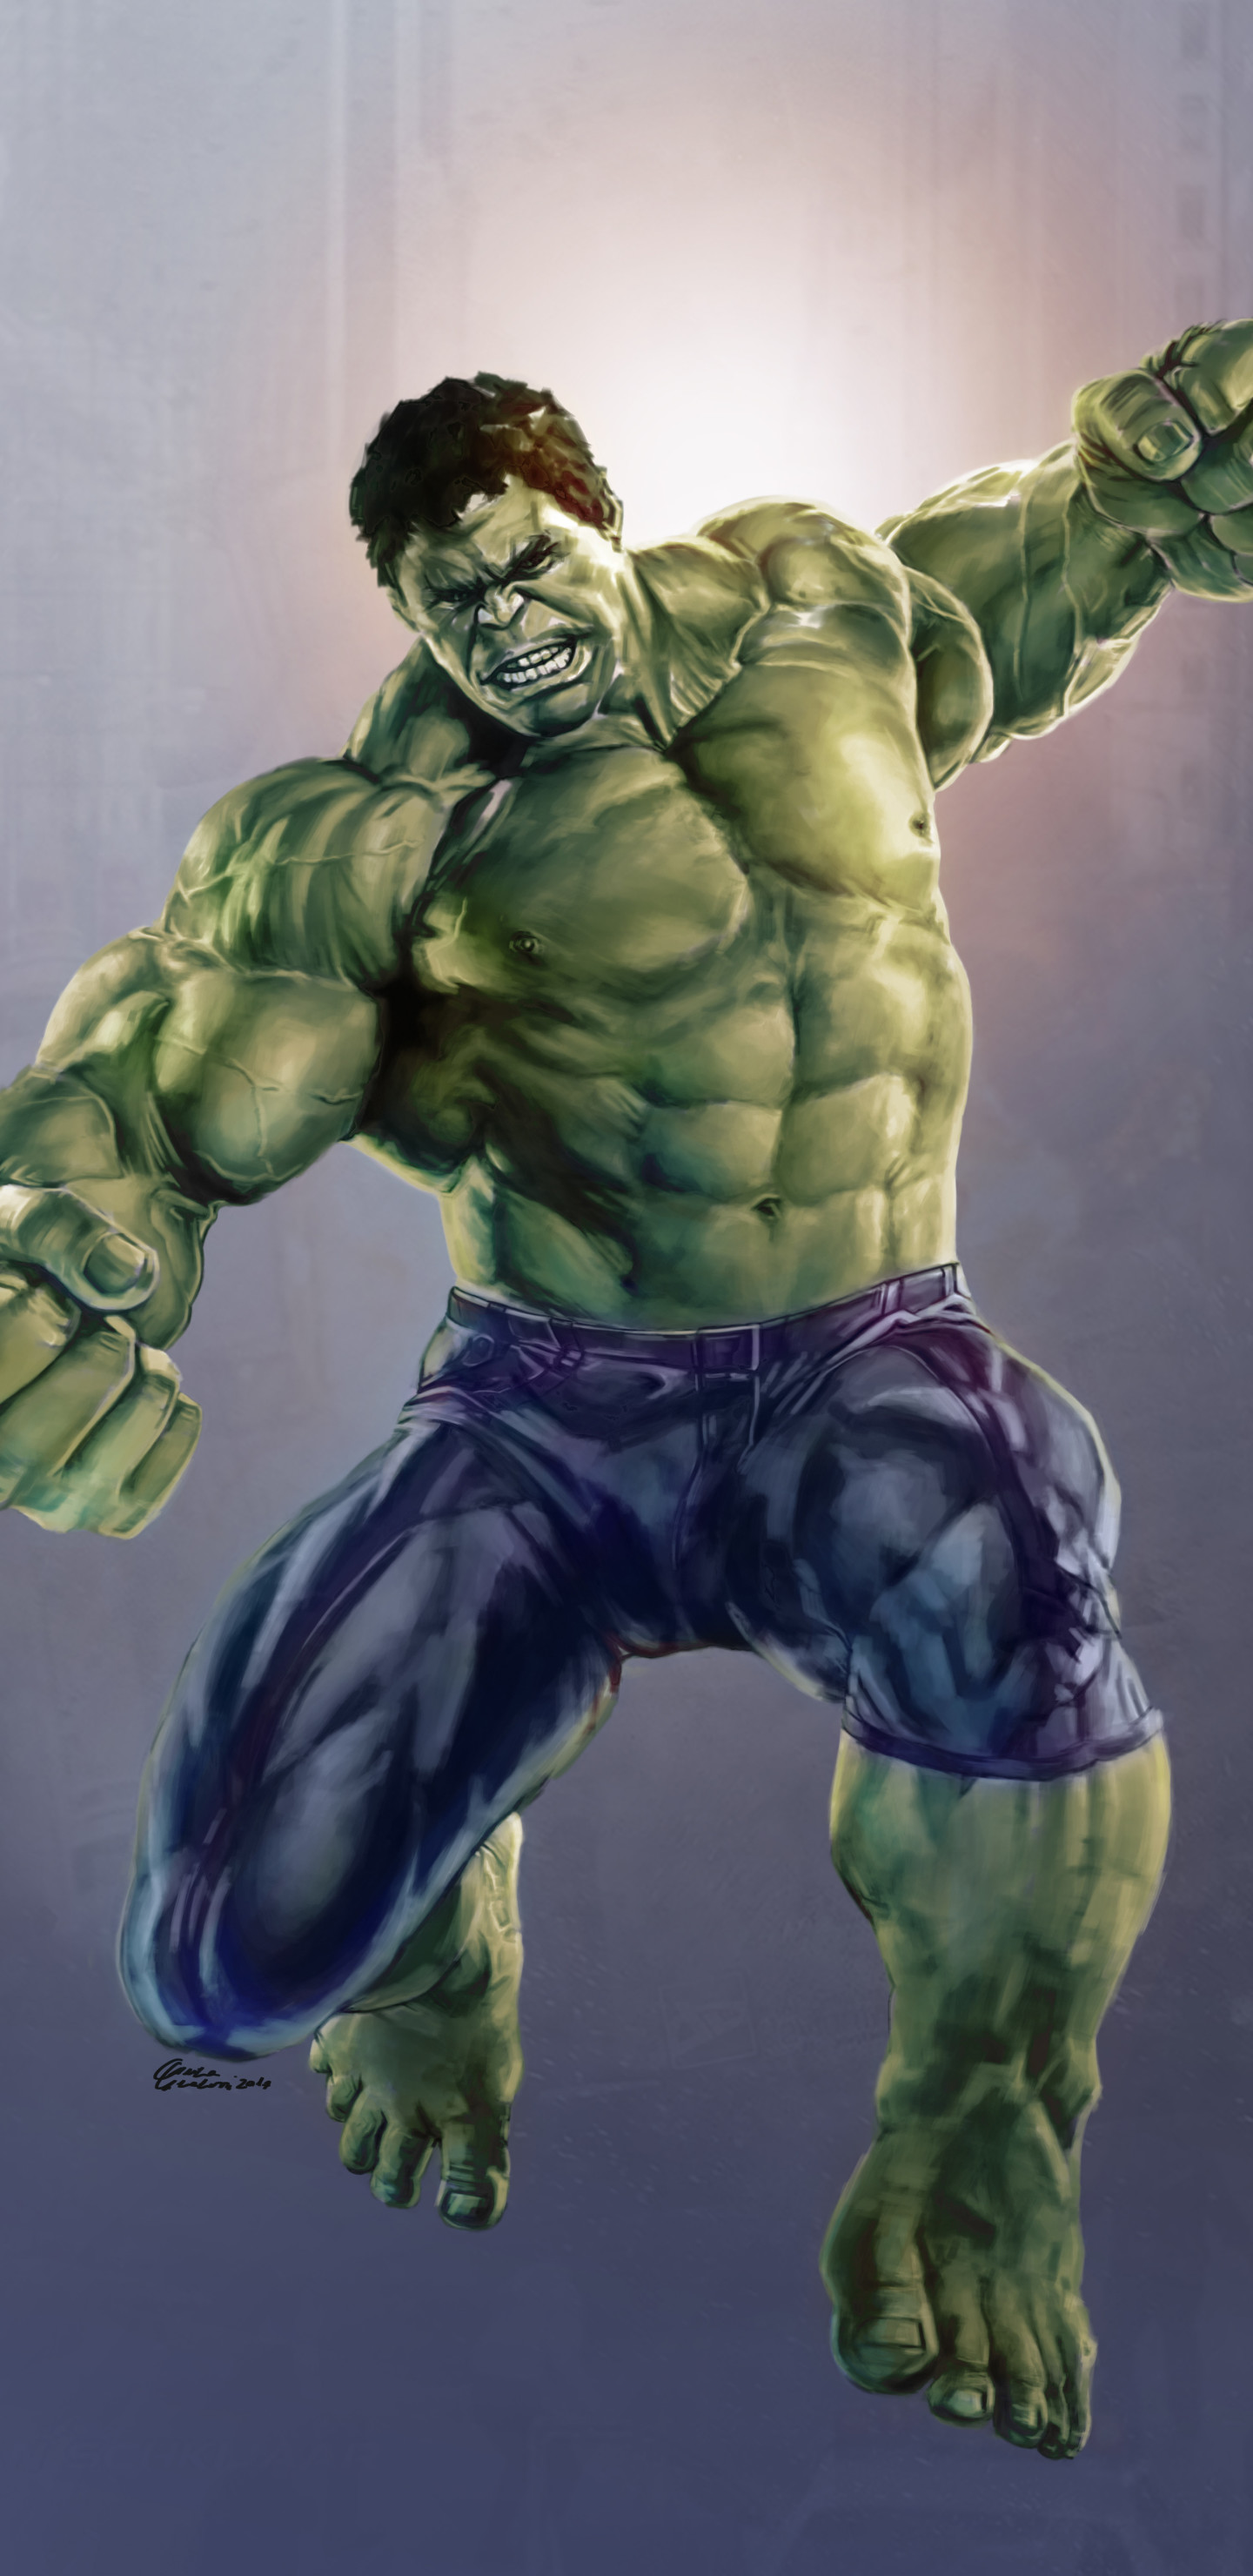 Incredible Hulk Wallpaper Iphone - 1440x2960 Wallpaper 